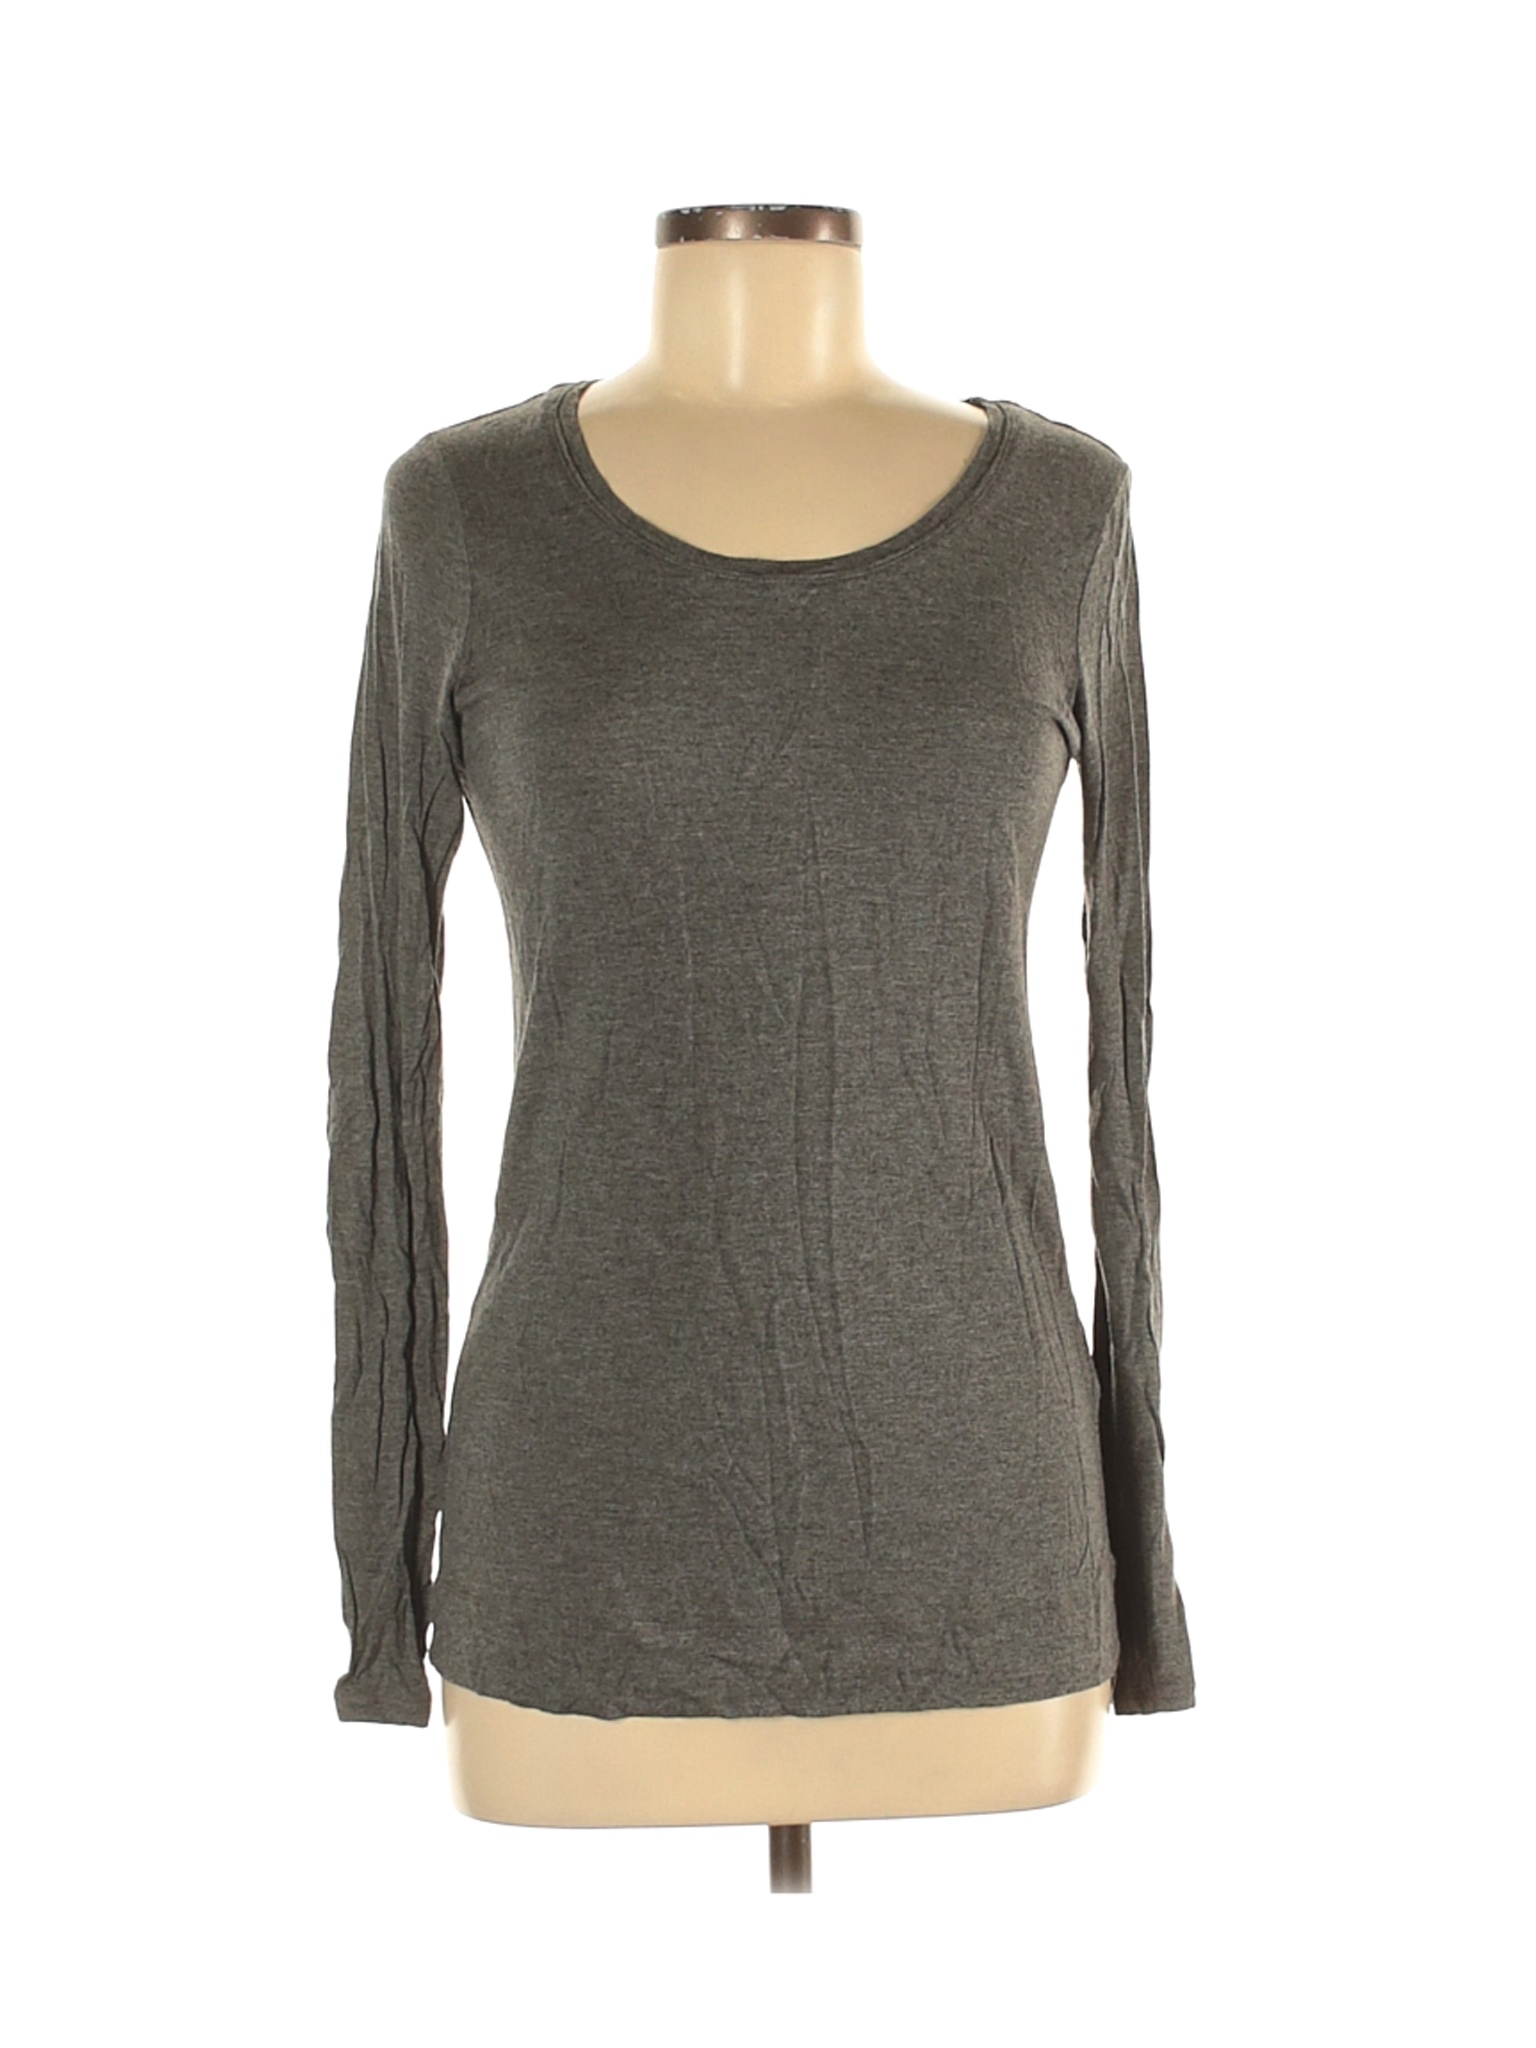 Simply Vera Vera Wang Women Gray Long Sleeve T-Shirt M | eBay